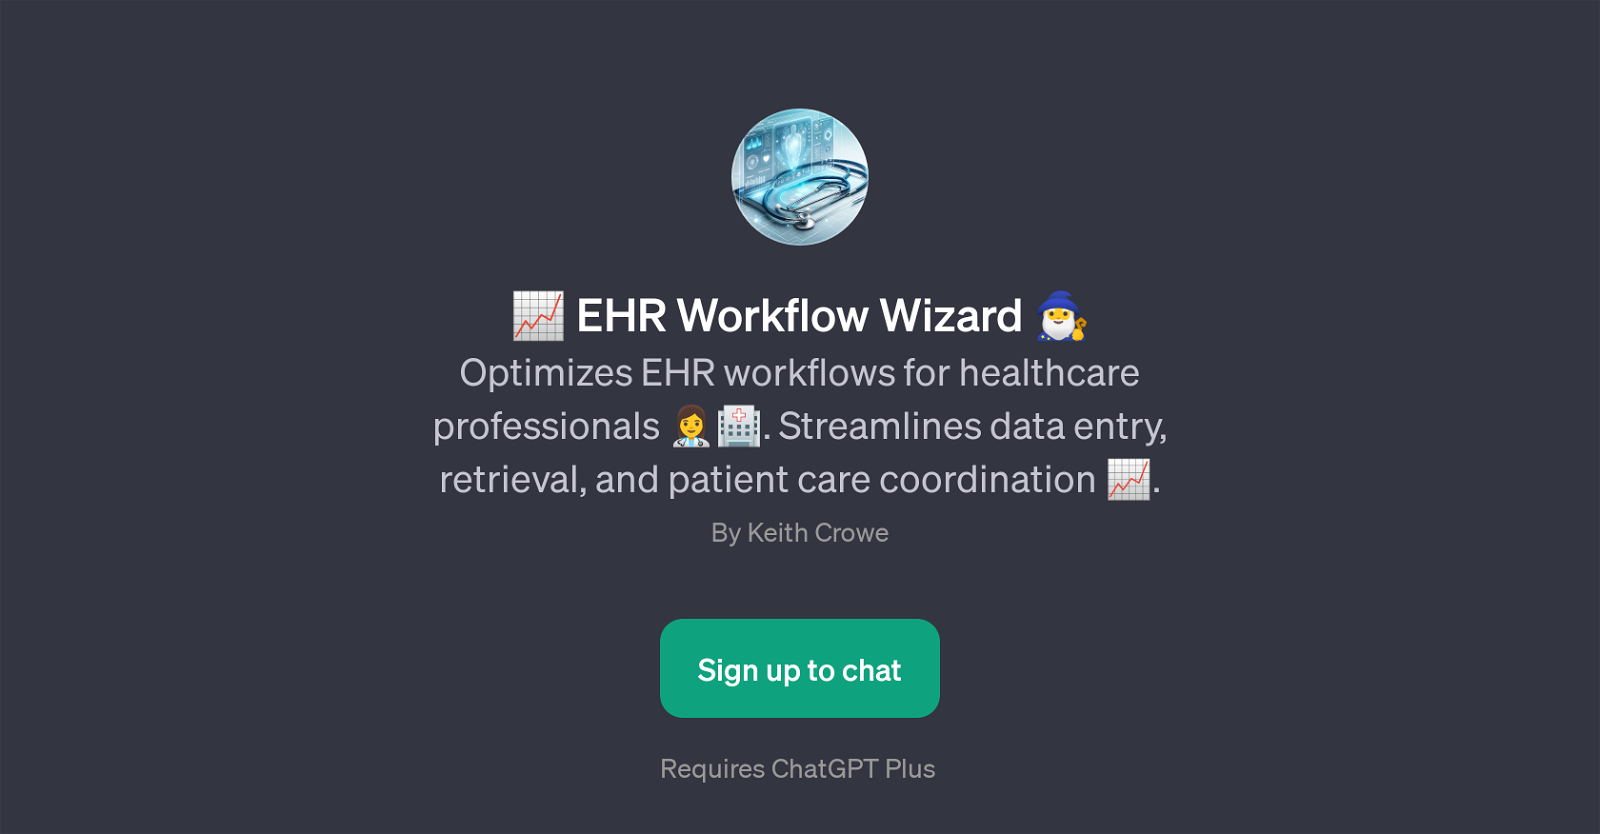 EHR Workflow Wizard website